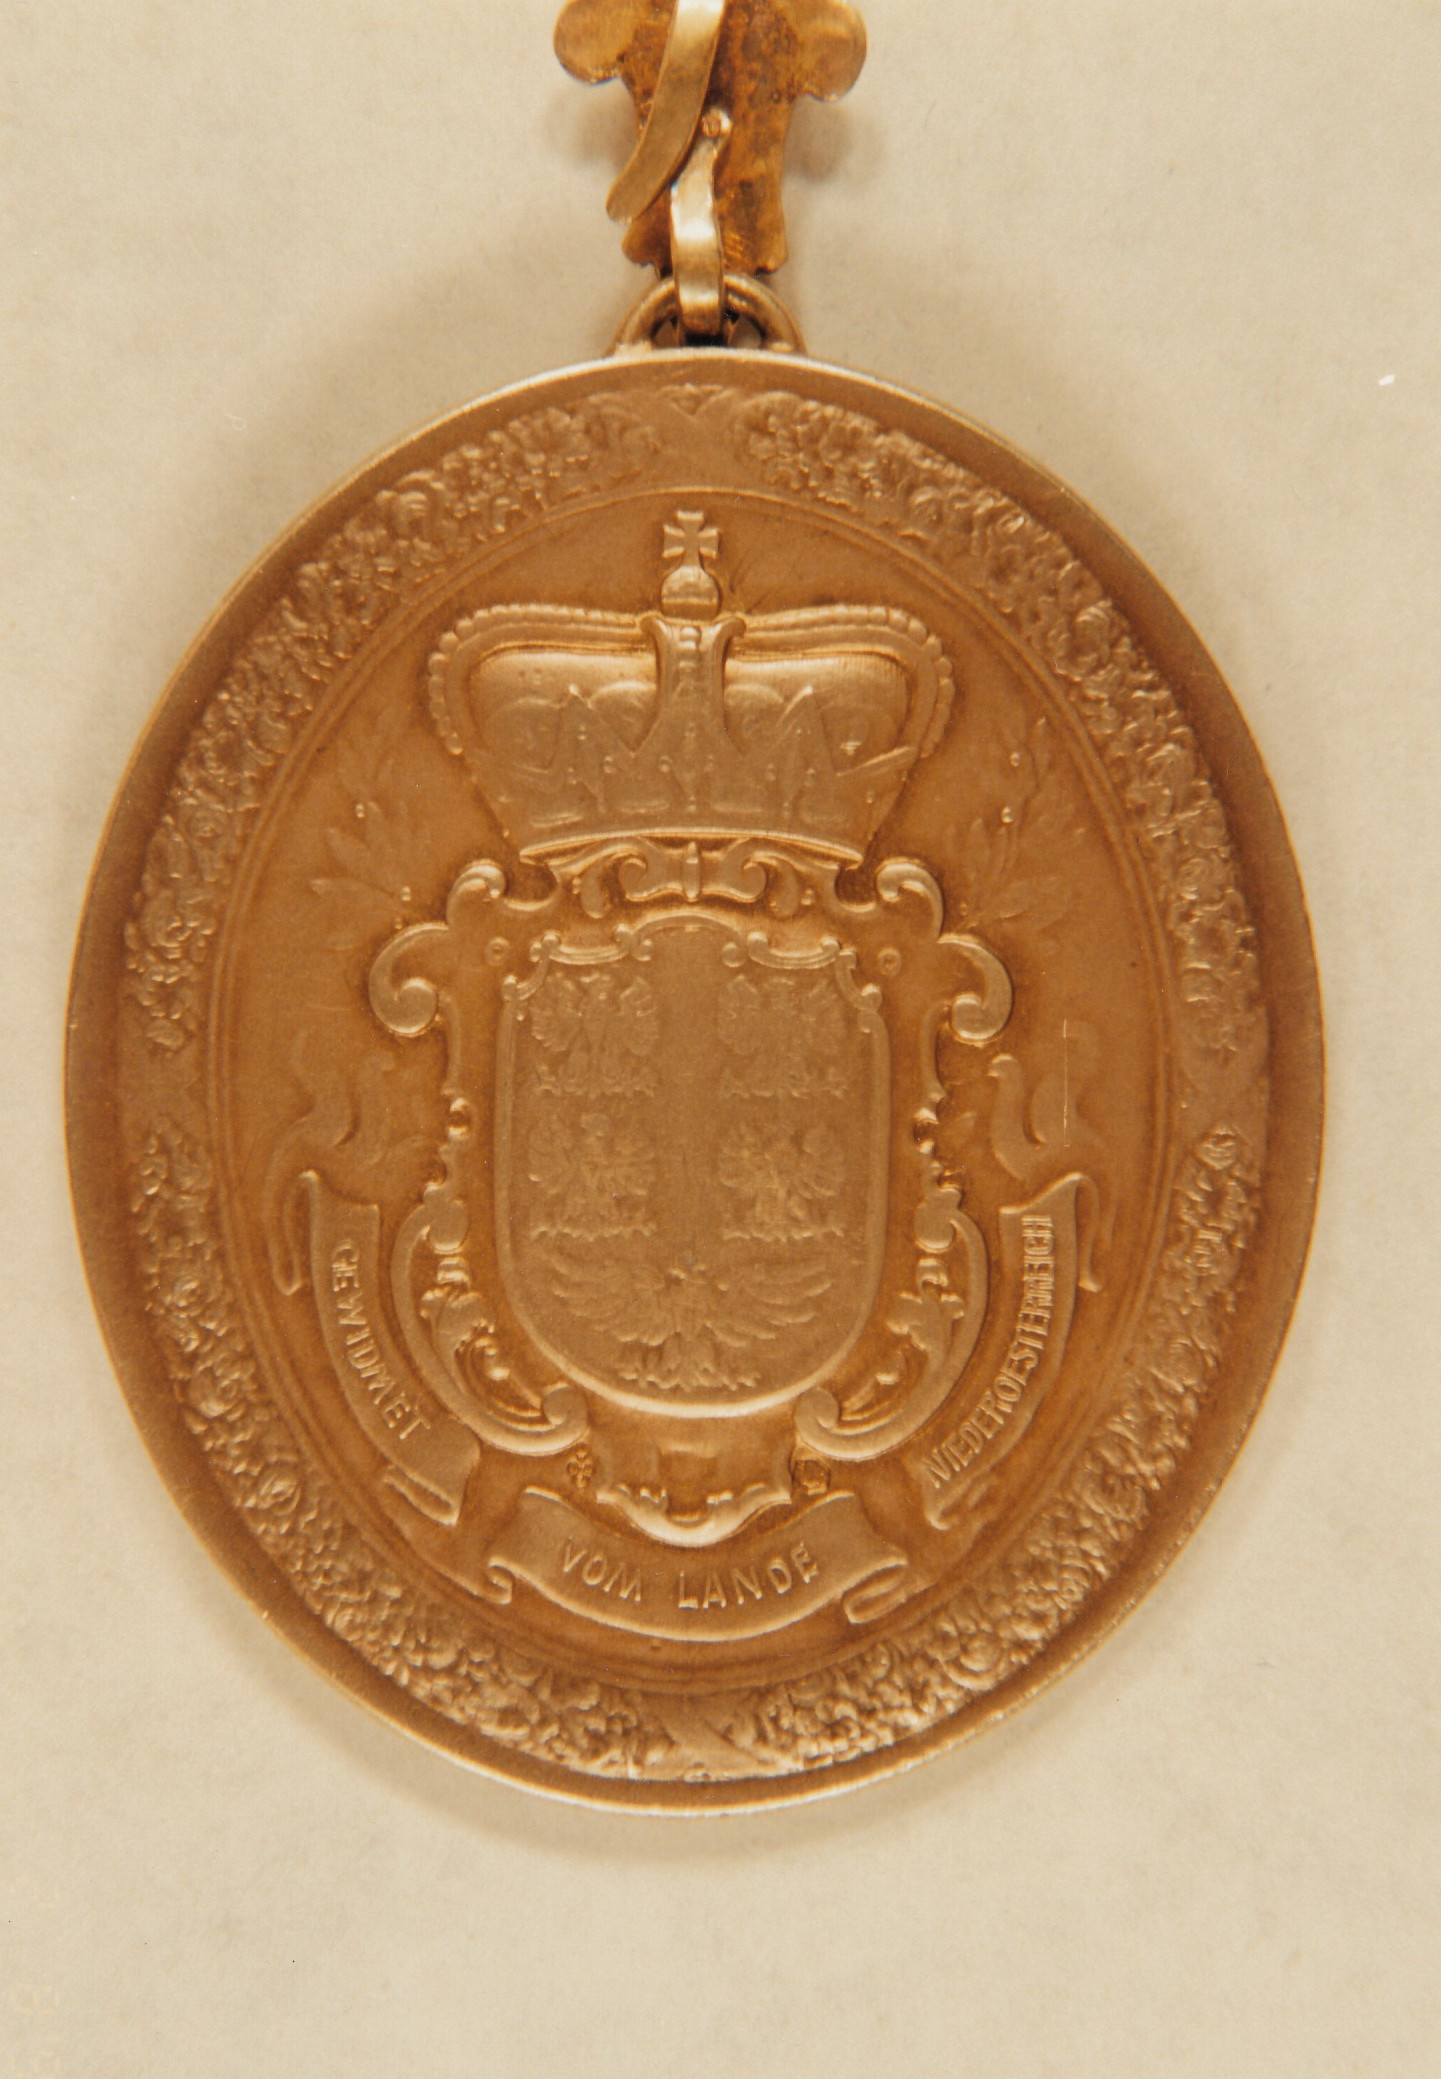 Rückseite der vom Landtag gestifteten Bürgermeister-Medaille